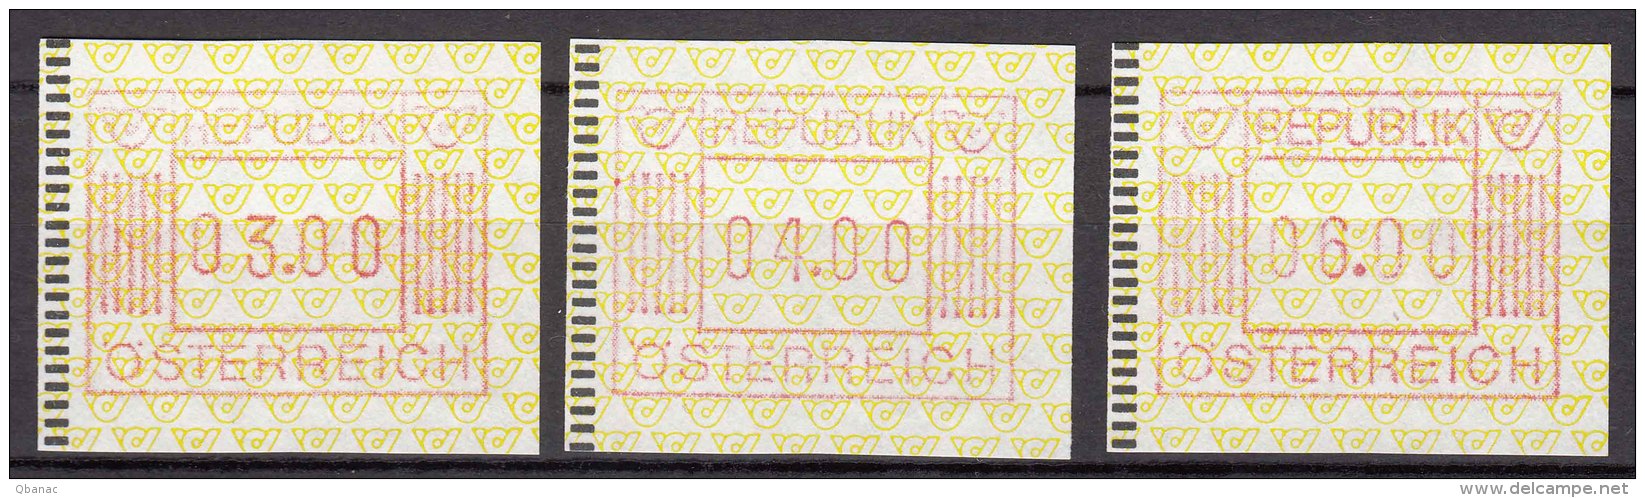 Austria Machine Stamps, Automatmarken 1983 - Maschinenstempel (EMA)